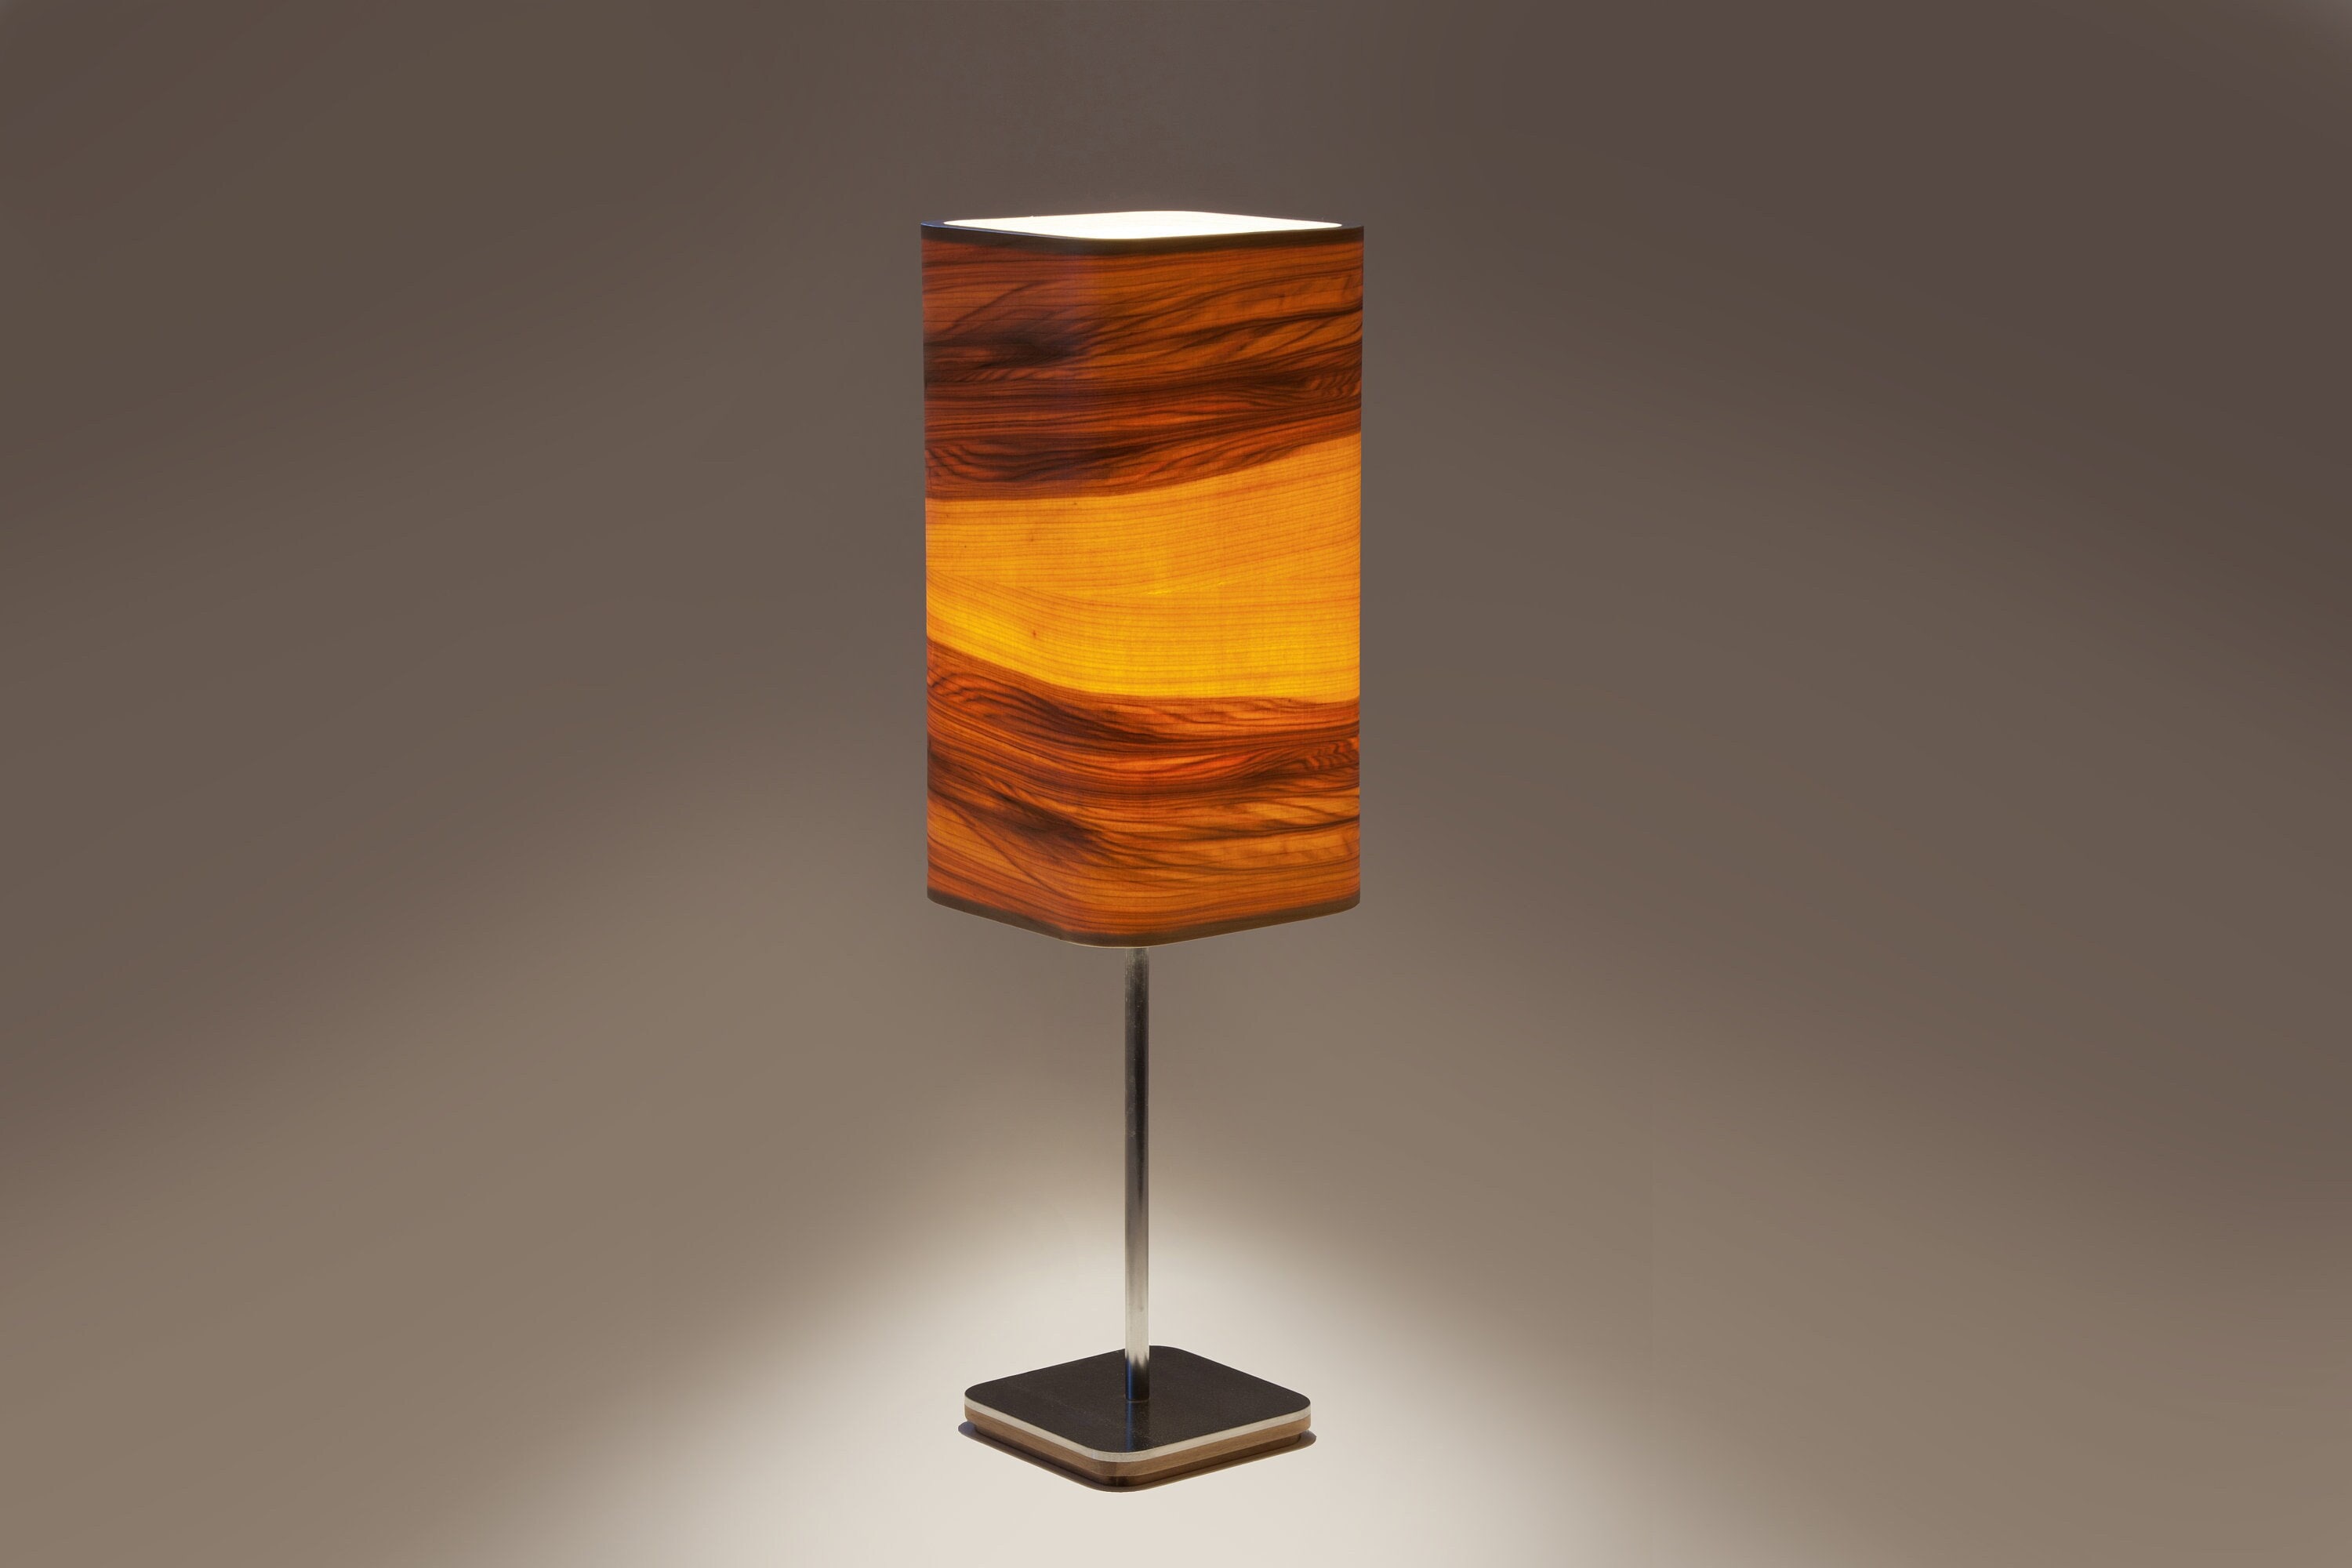 lampe de chevet, éclairage bureau, lampe table faite à la main, en placage bois naturel gomme rouge, design linéaire des années 60, bois